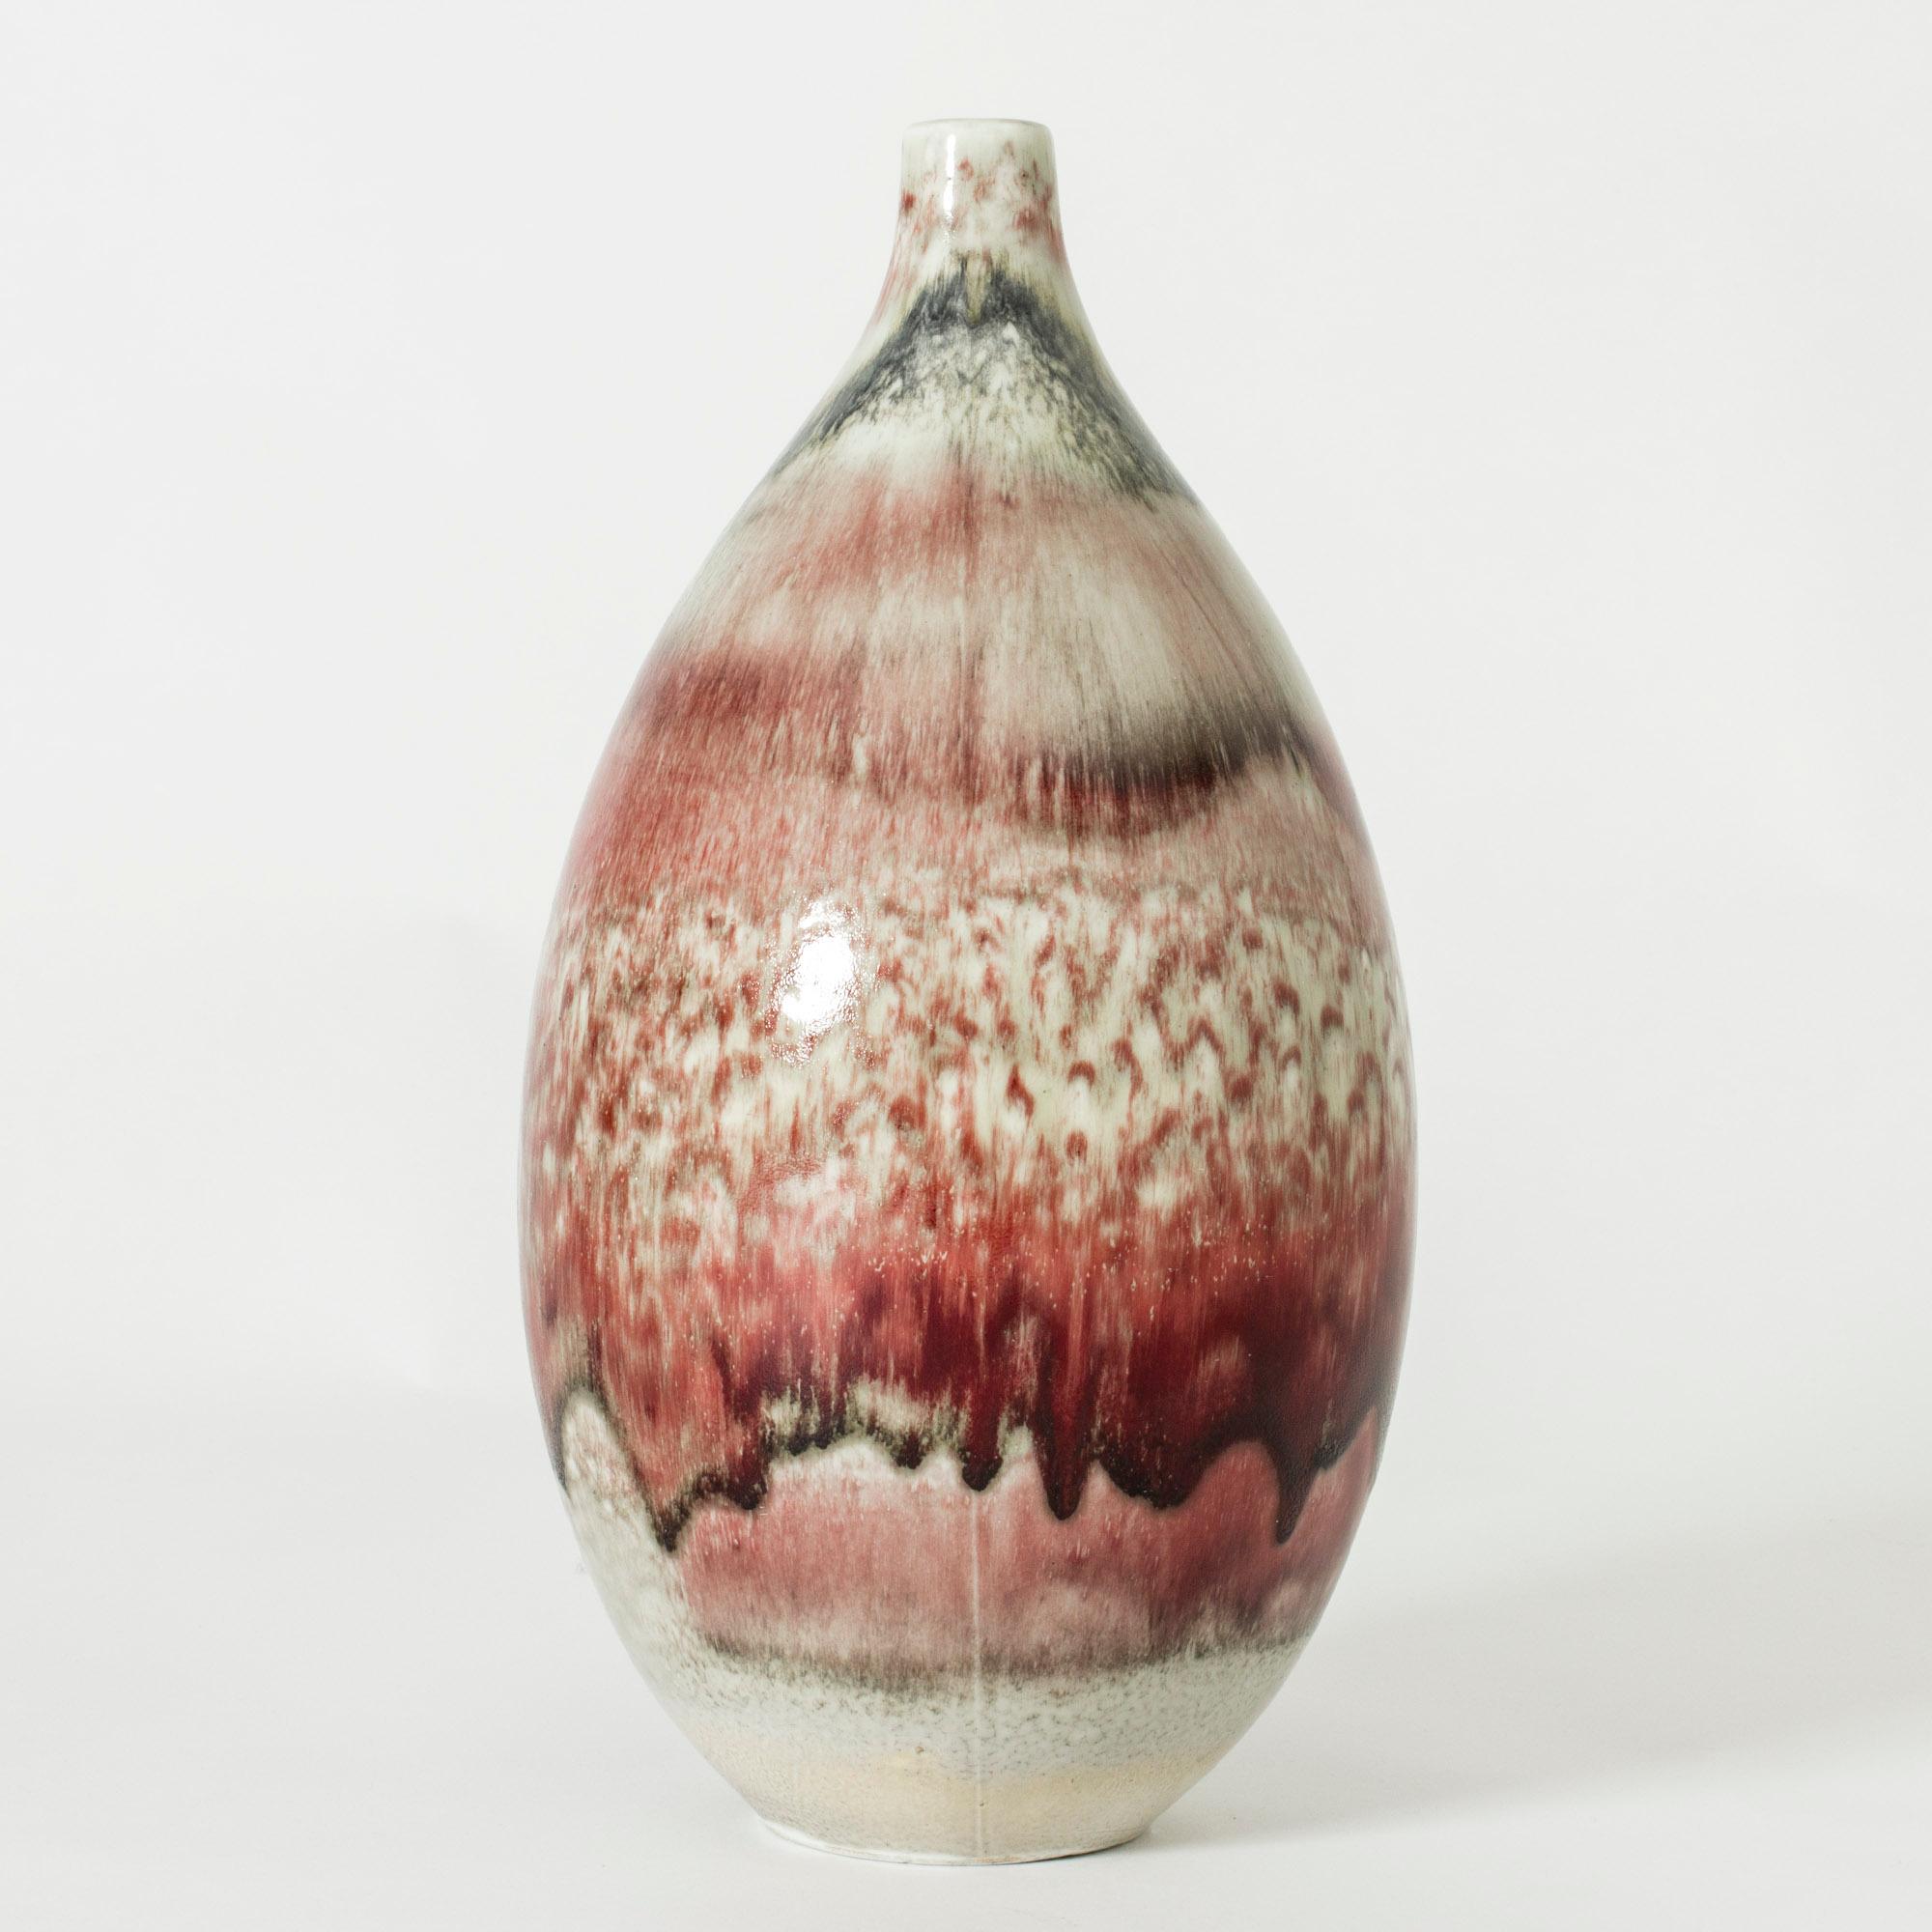 Steinzeugvase von Friedl Holzer-Kjellberg, groß und voluminös, glasiert mit einer erstaunlichen, tiefroten Ochsenblutglasur. Schöne Variation der Glasur rund um den Körper.